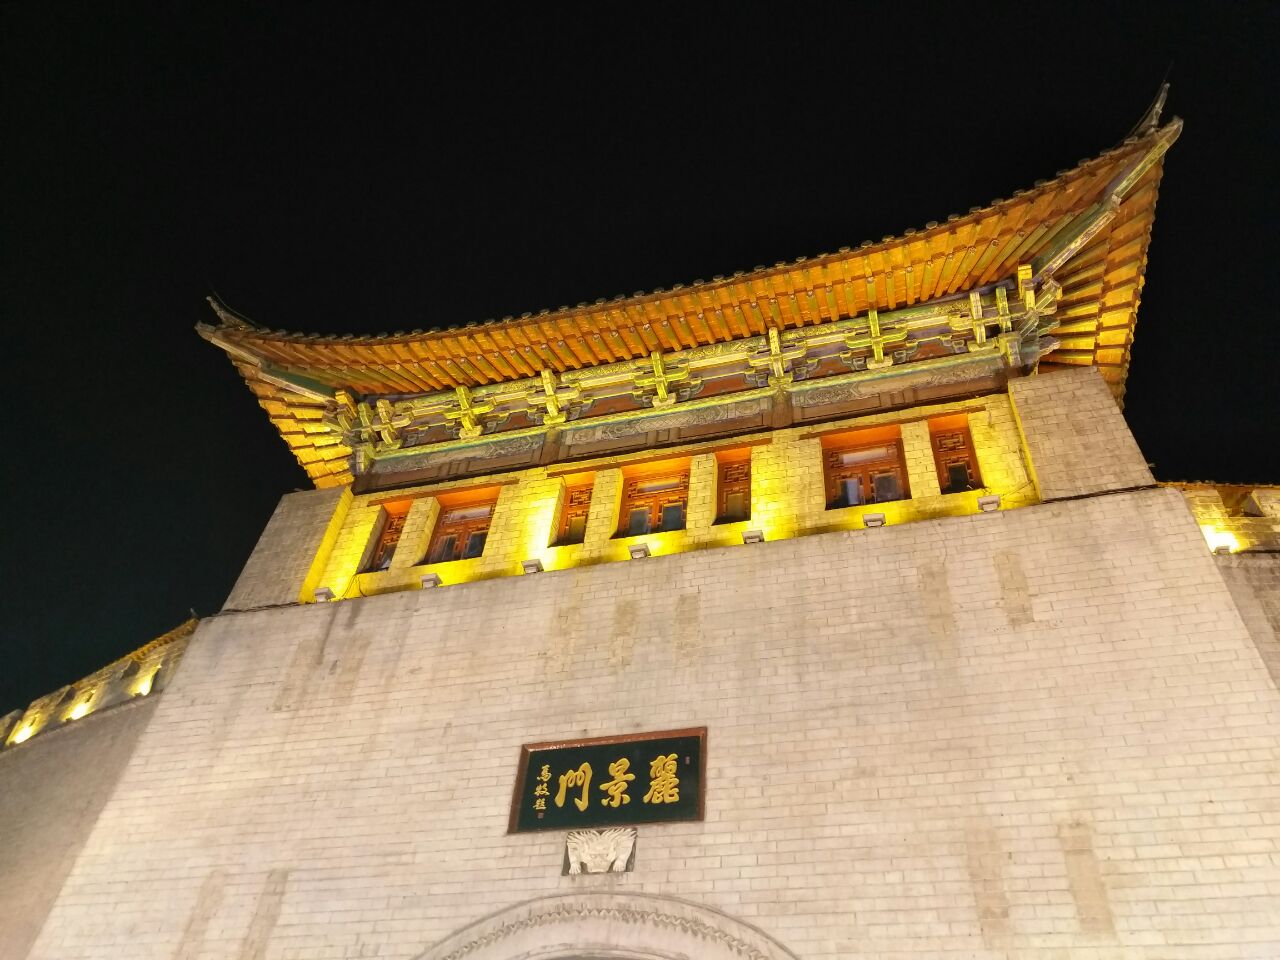 【携程攻略】购物,丽景门，号称中原第一门，中国最古老的城门之一。可以俯瞰老街，城门…